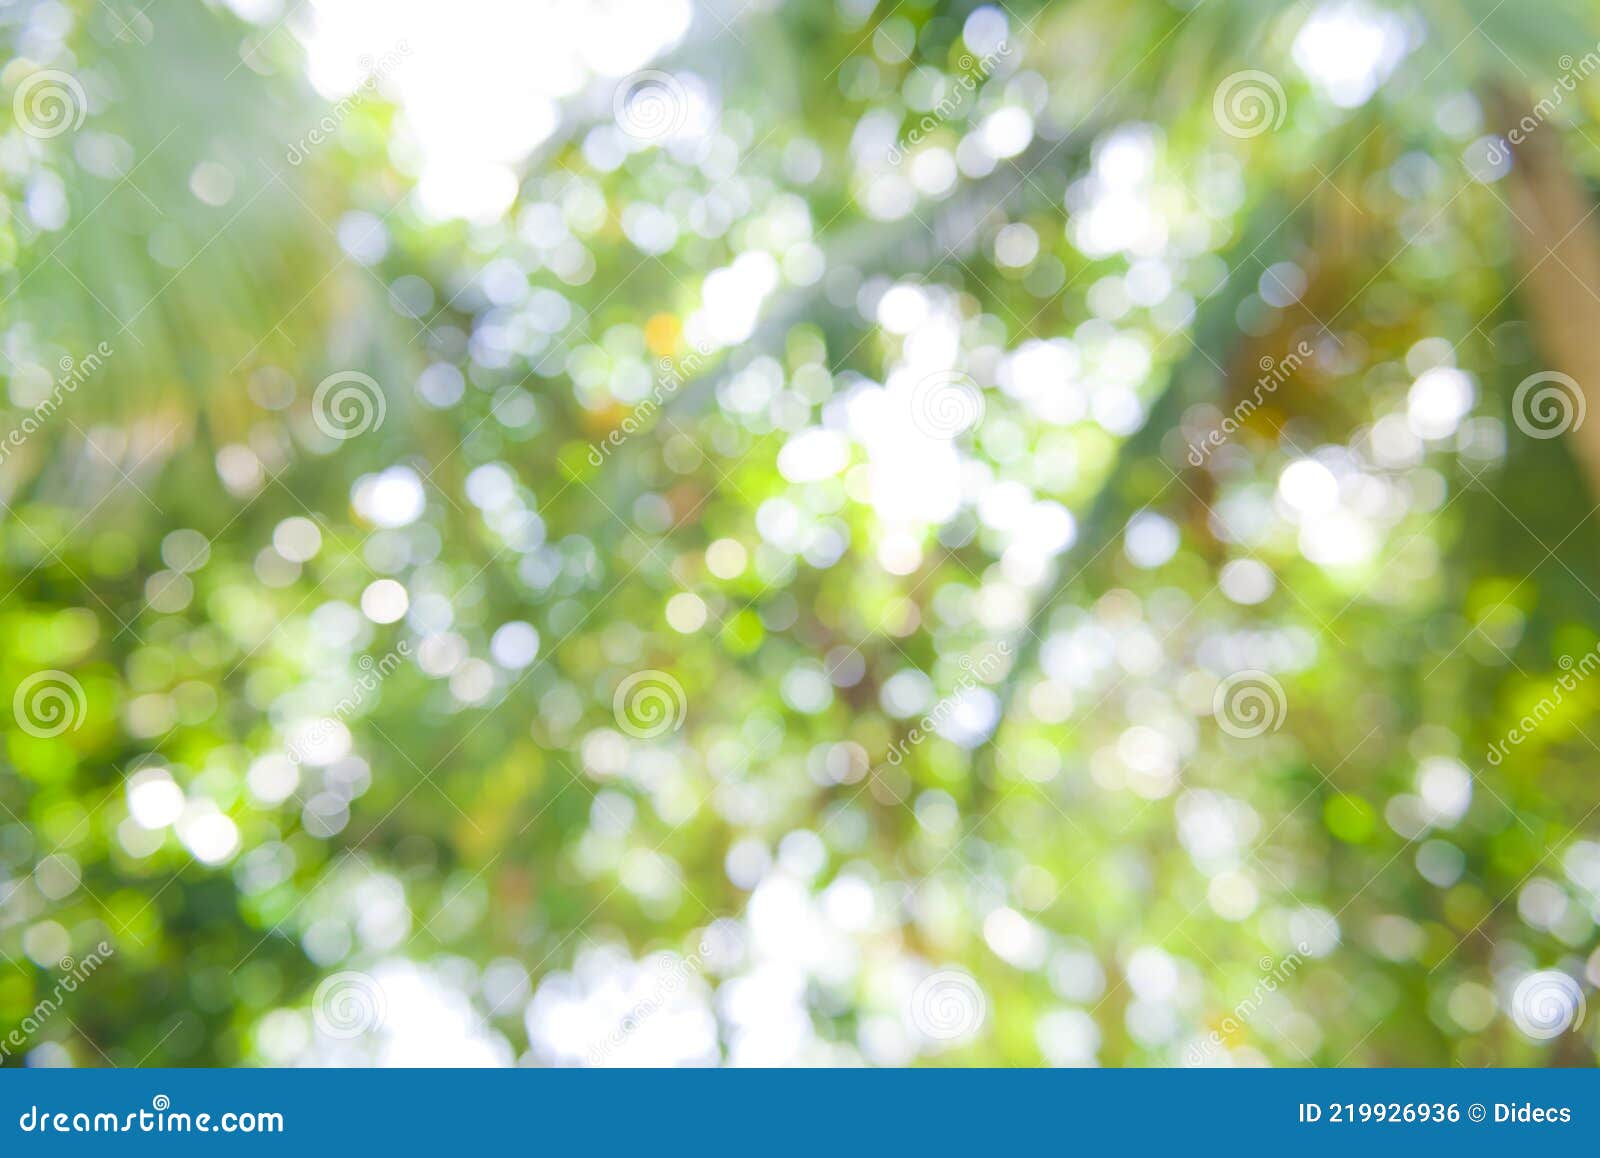 Hãy nhanh tay bấm vào hình ảnh liên quan đến cây rừng để tận hưởng vẻ đẹp của tán lá - Foliage. Những đóa lá rộng lớn, có màu sắc sặc sỡ của cái thu, sẽ đưa bạn vào một không gian yên bình, thư thái và gần gũi với thiên nhiên.